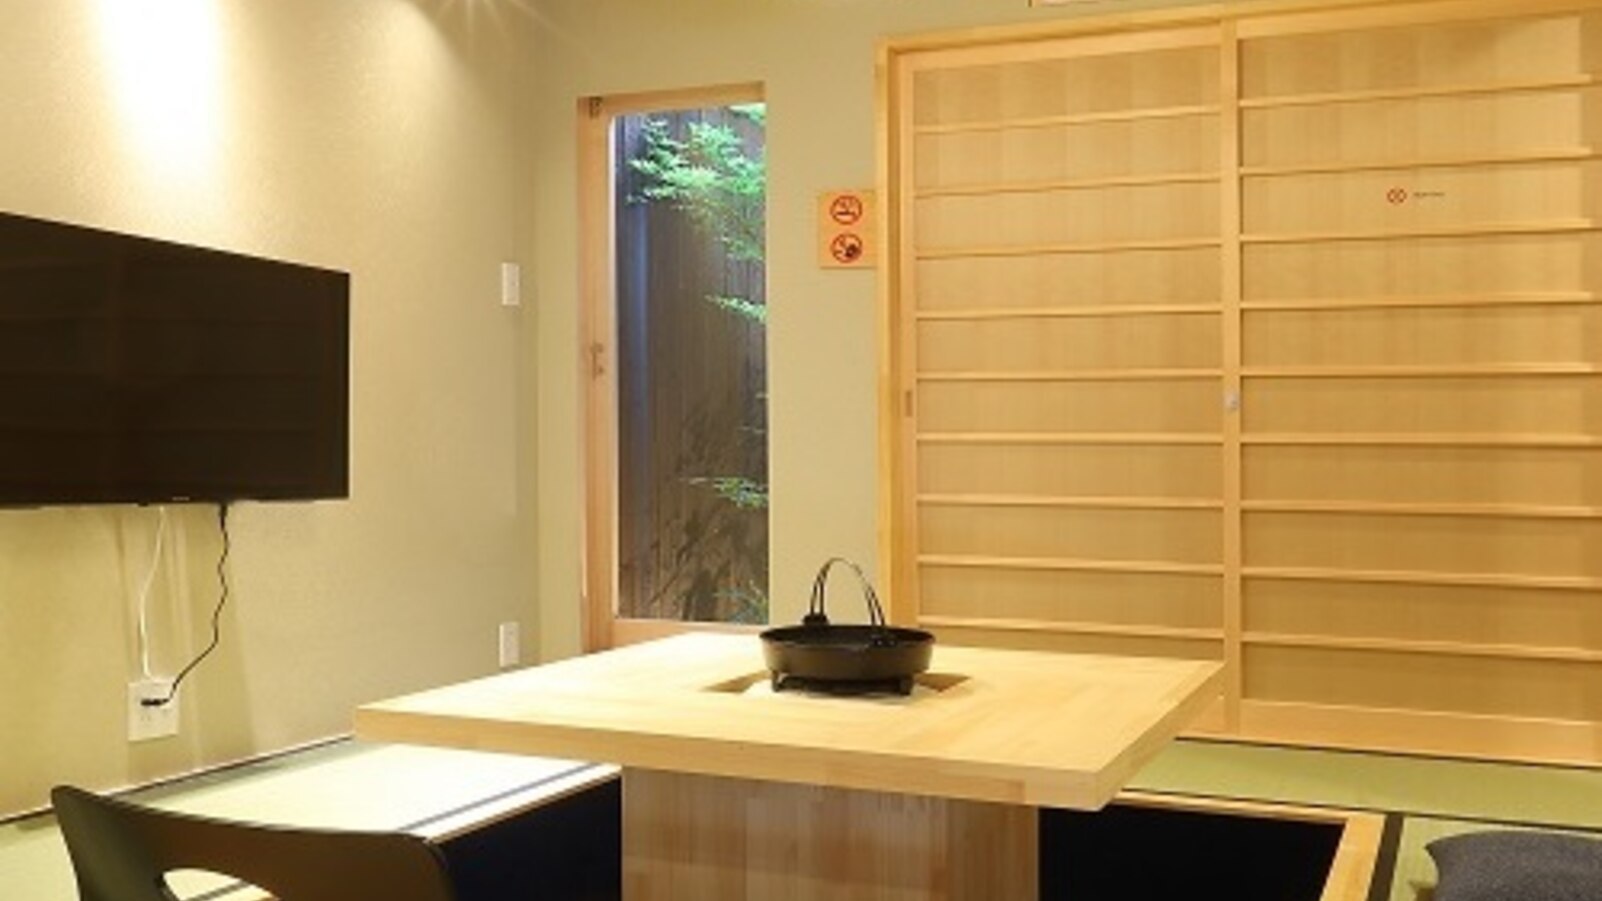 【一泊2食付】京都の名店グルメで住まうような京都旅〇夕食はレストラン「食と森」重箱、サンドイッチ朝食